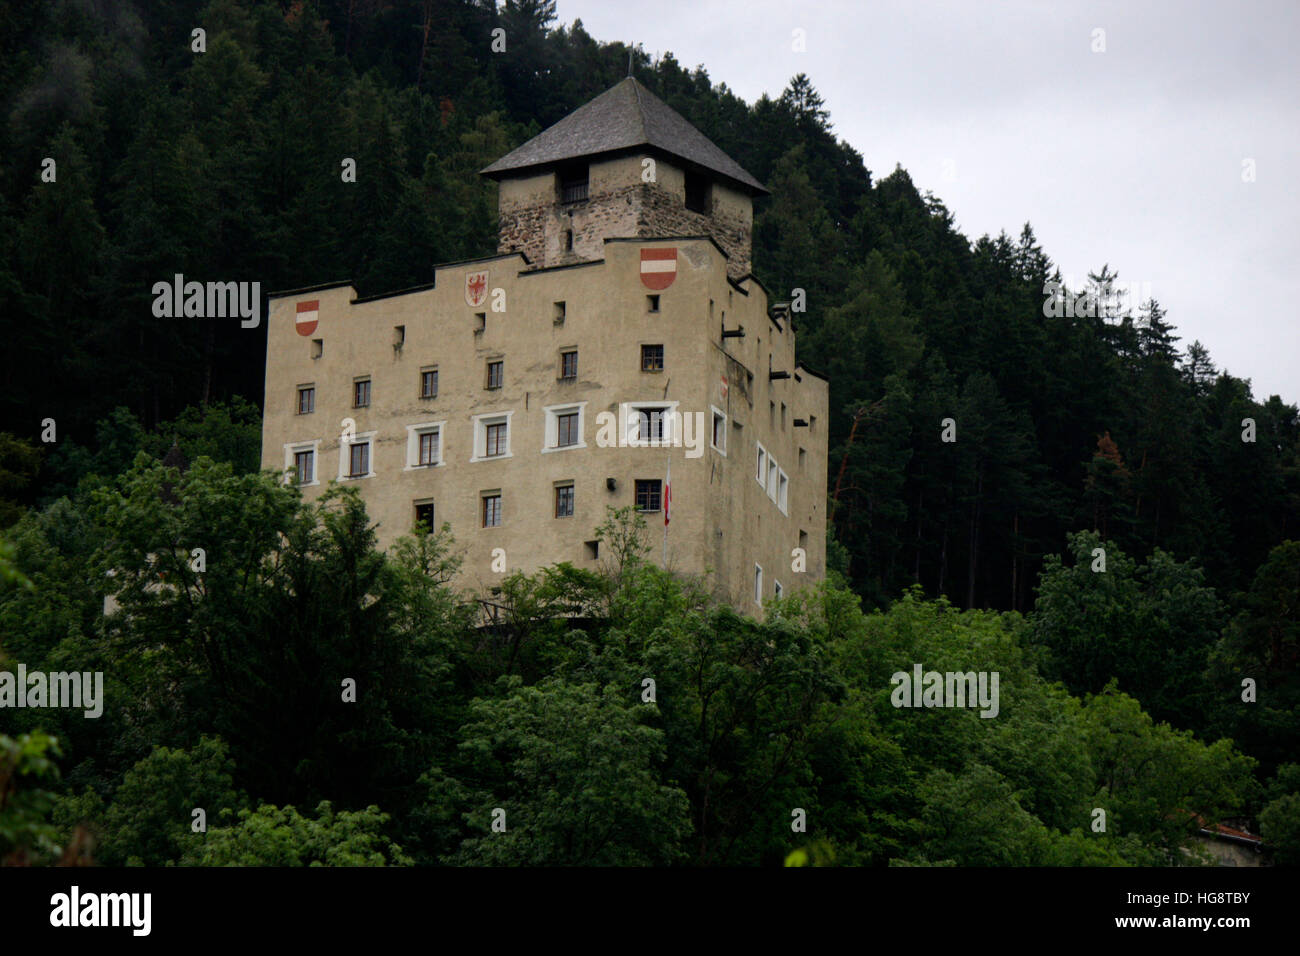 Burg von Landeck, Oesterreich. Stock Photo